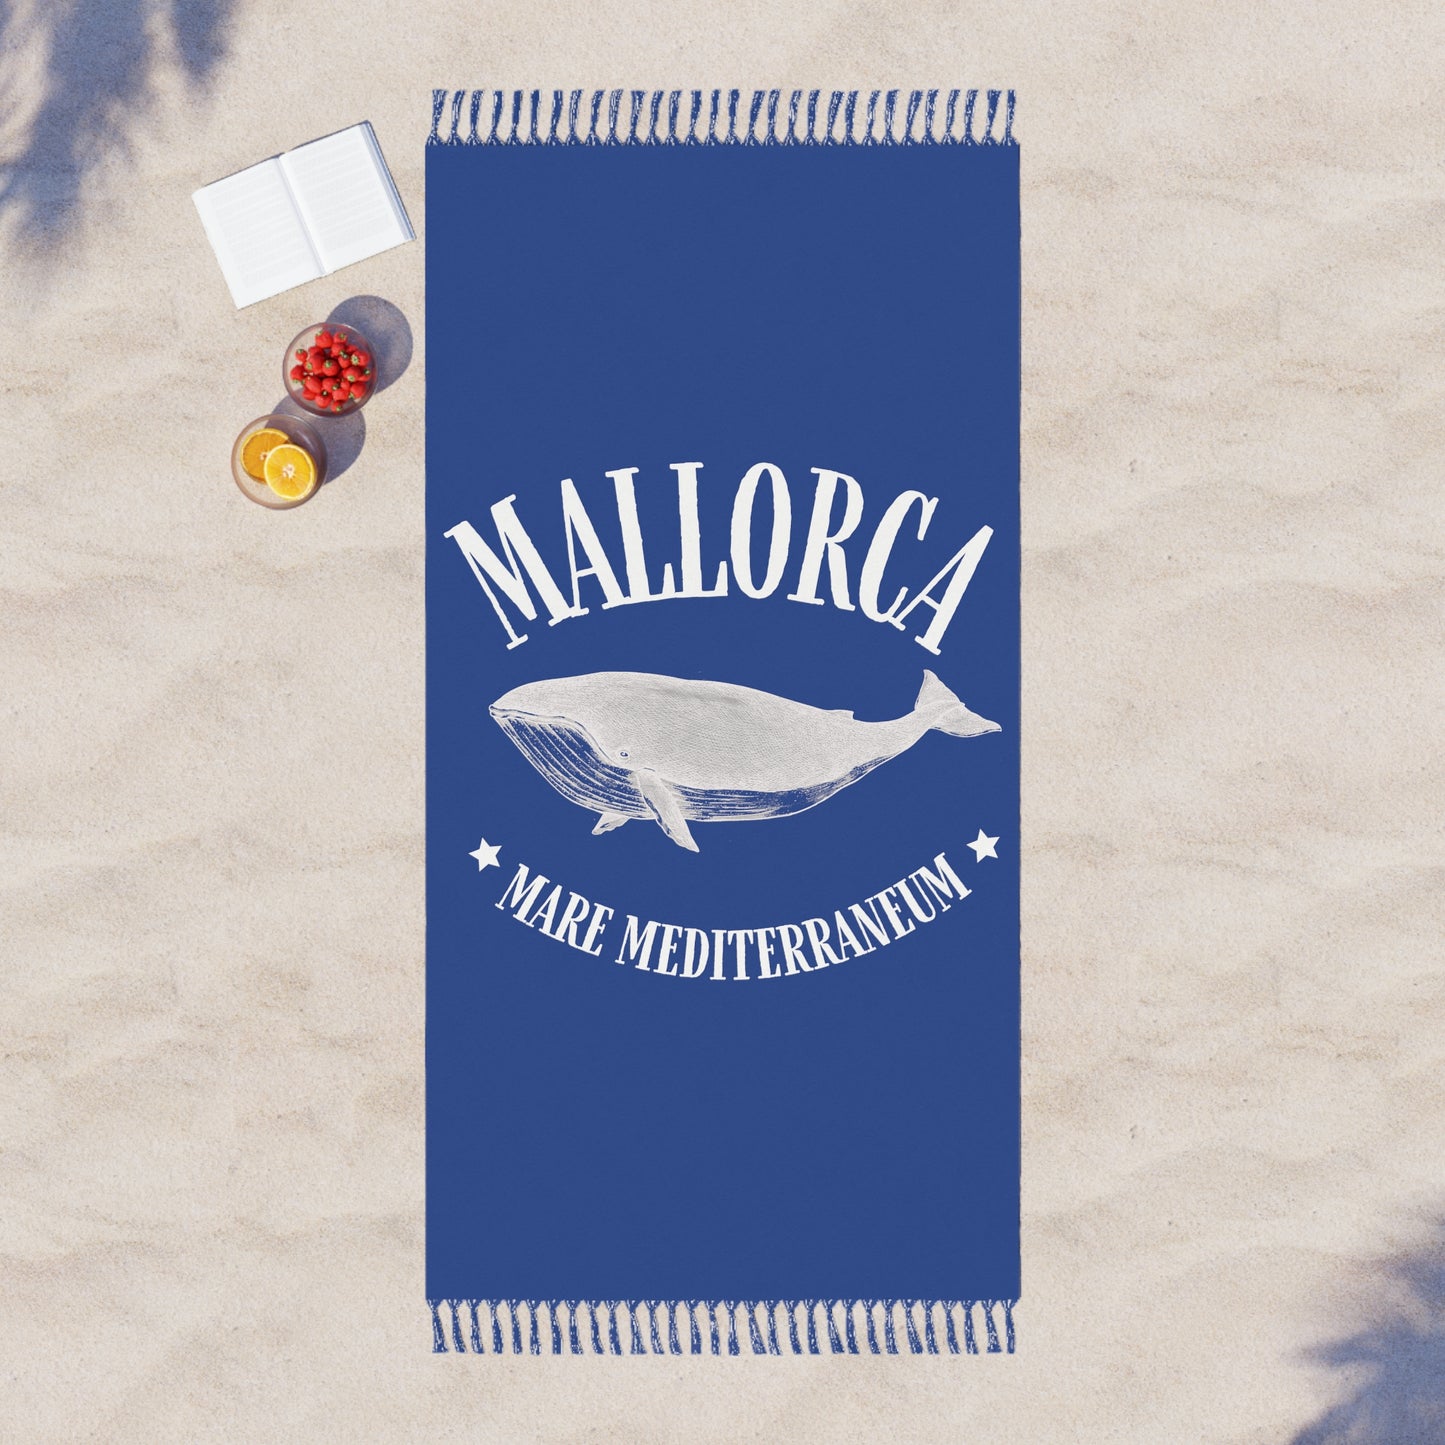 Mallorca Mare Mediterraneum Whale Beach Cloth